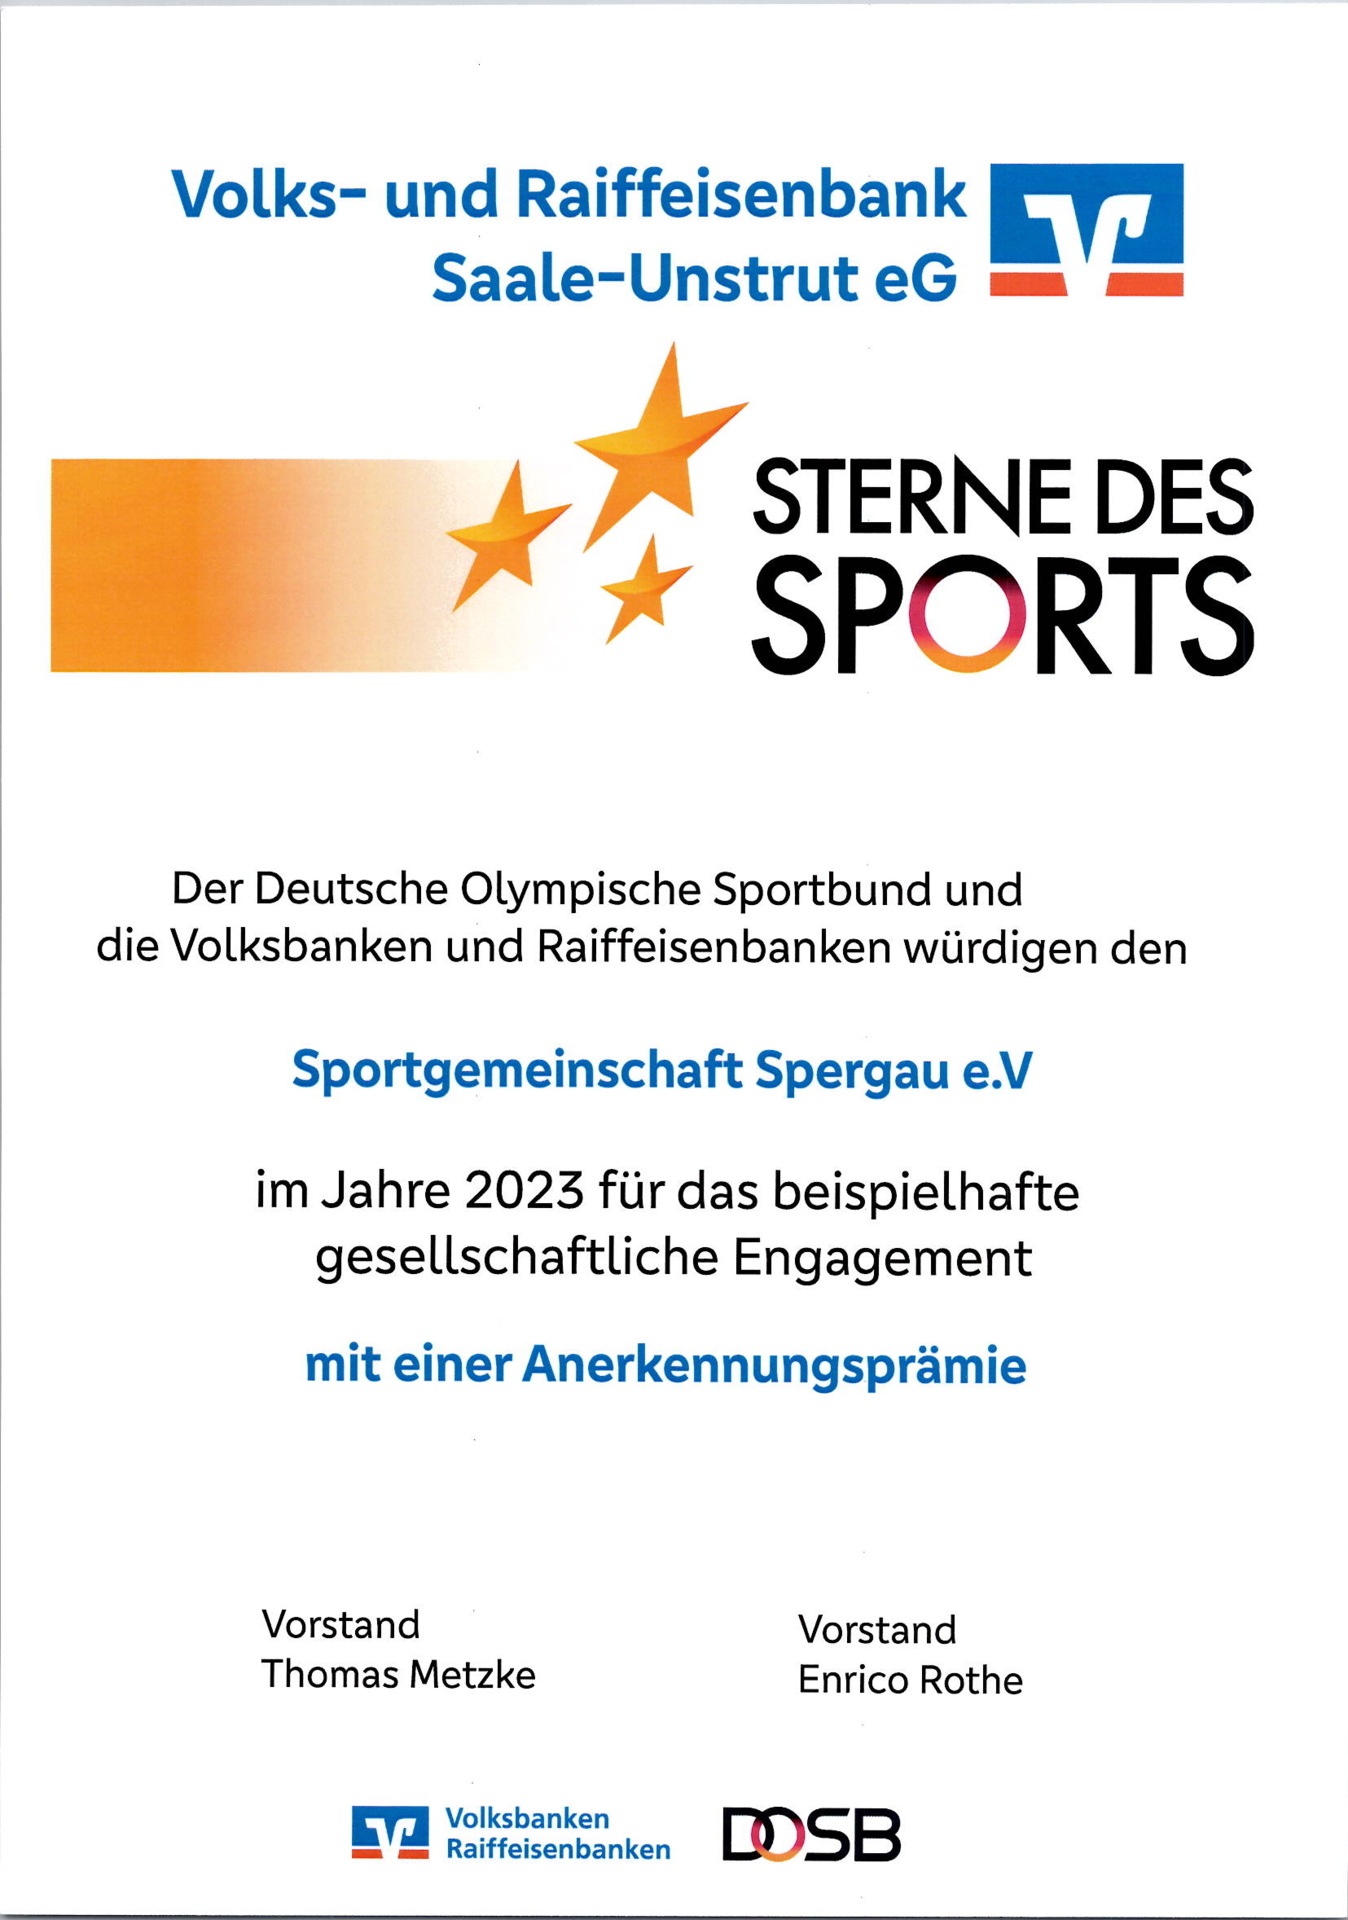 Urkunde "Sterne des Sports"